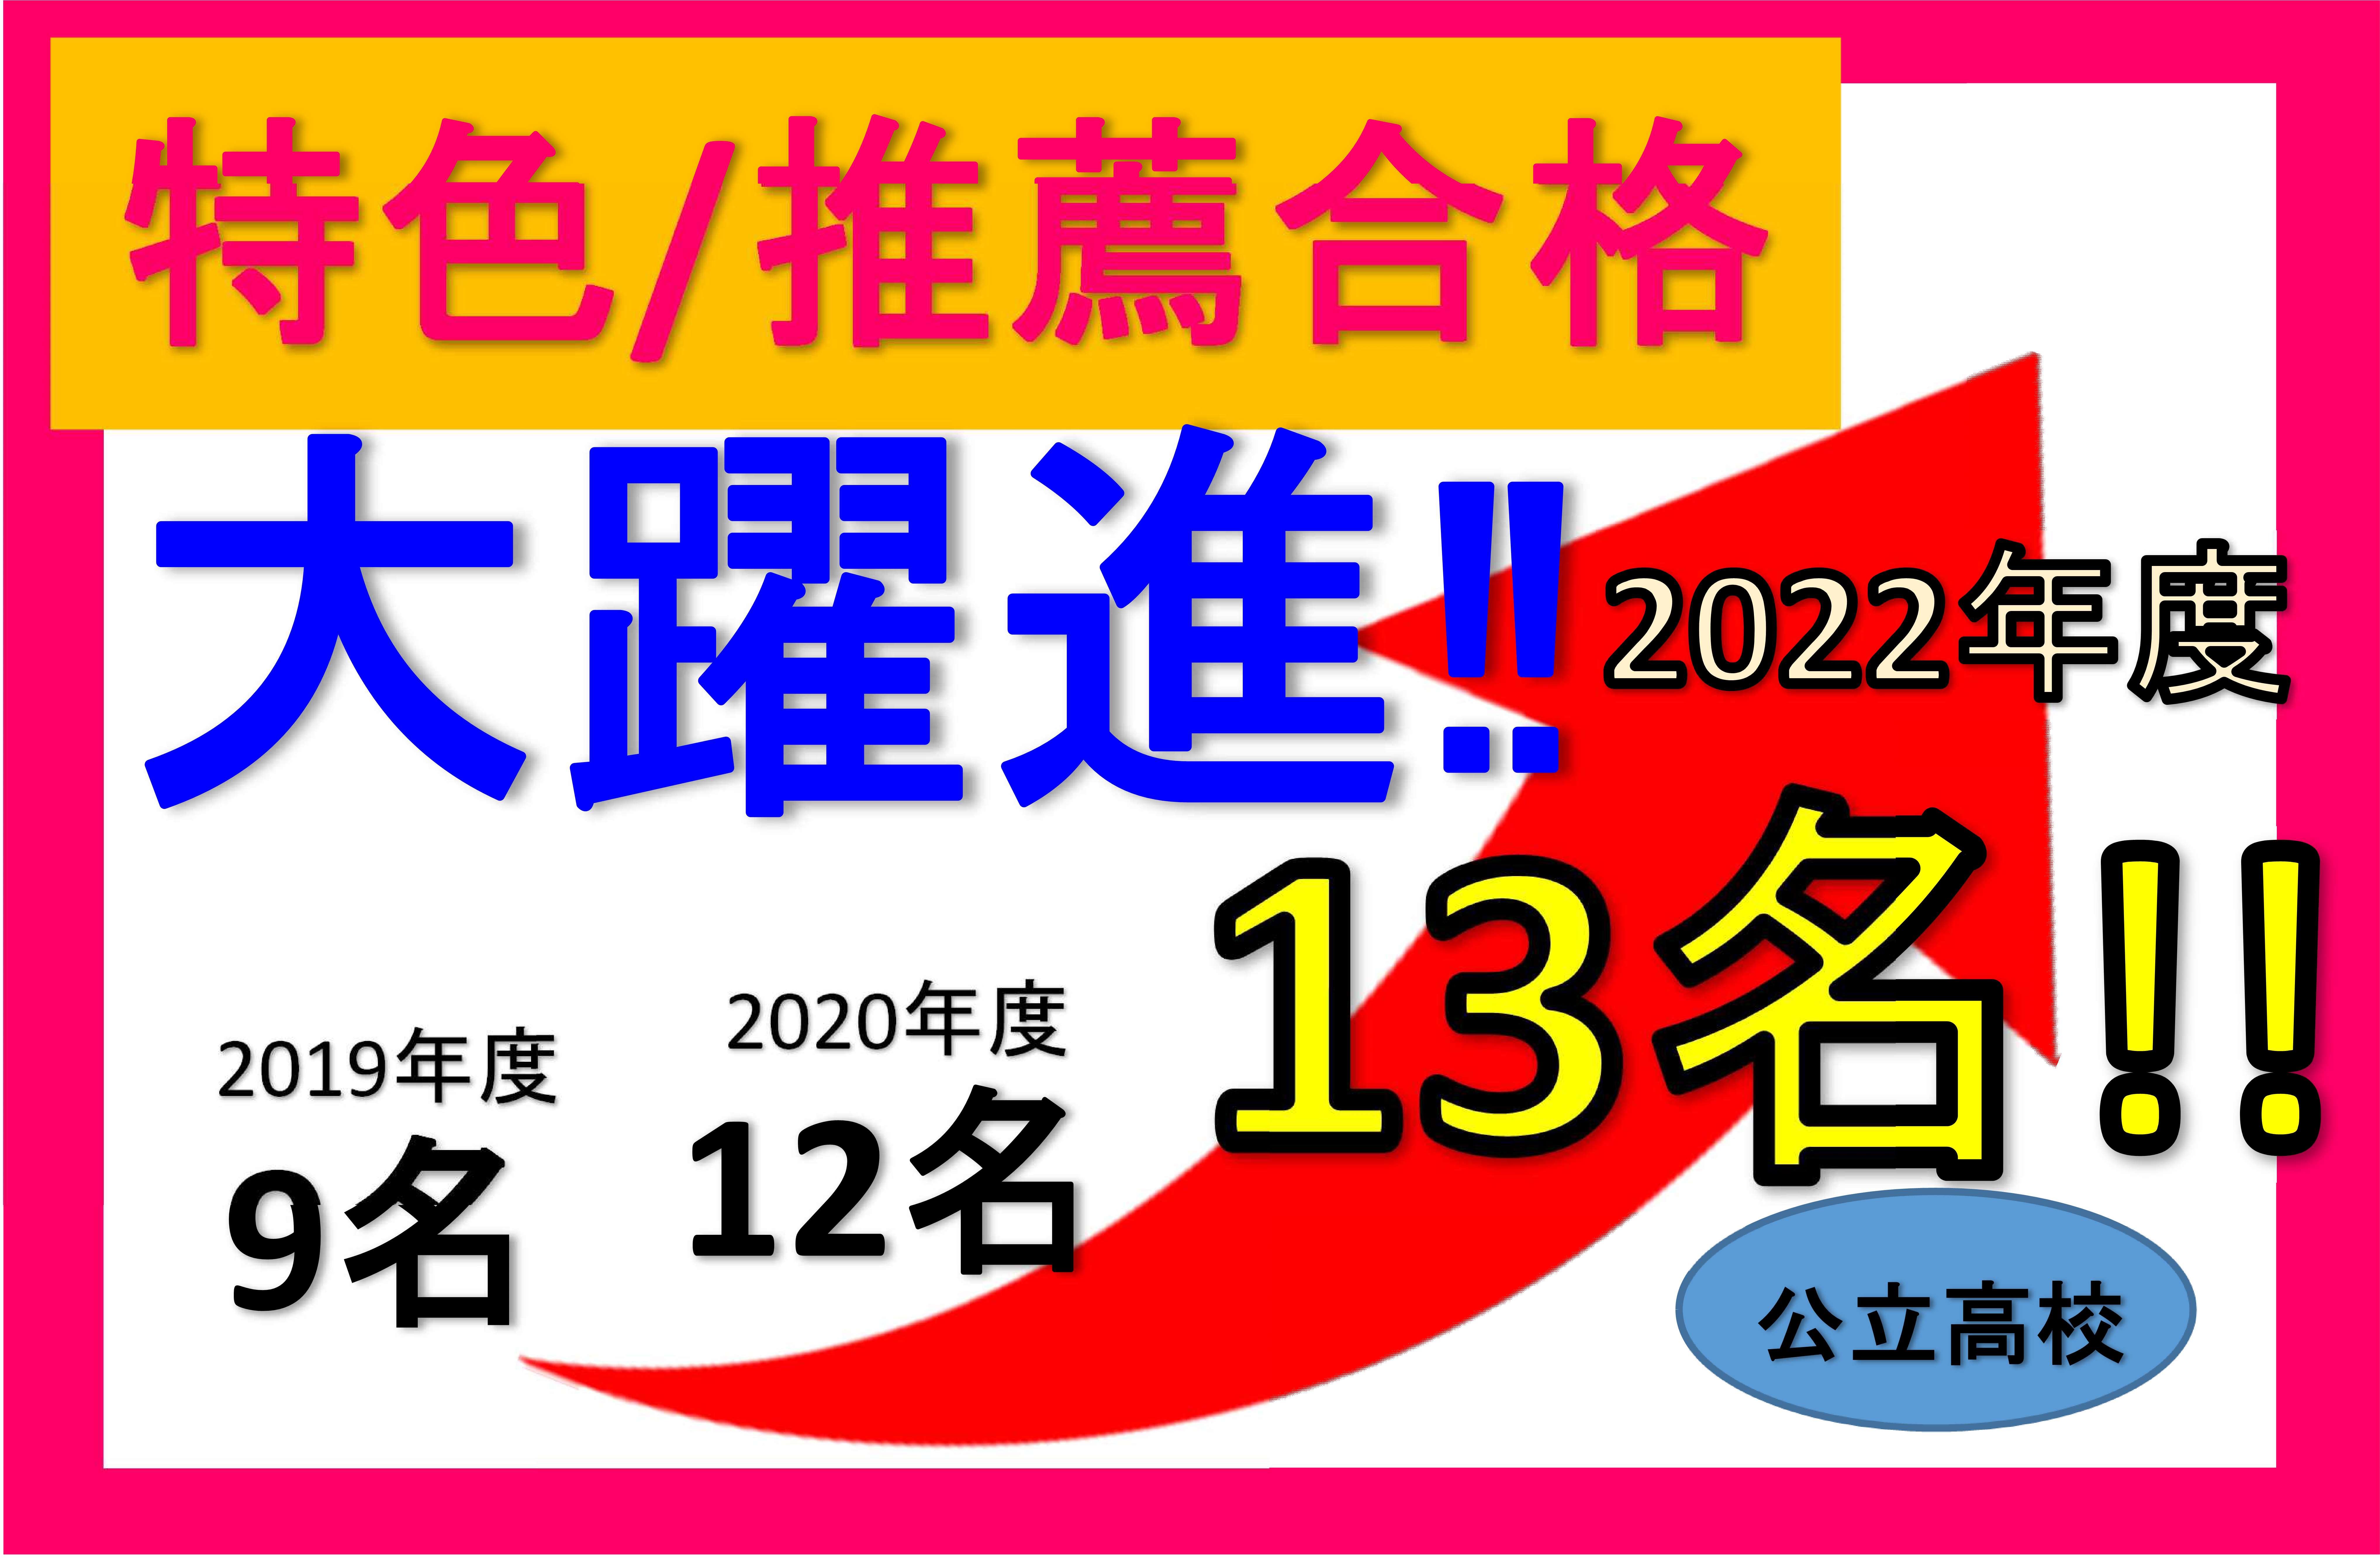 【掲示】【掲載】グイン「2022入試」